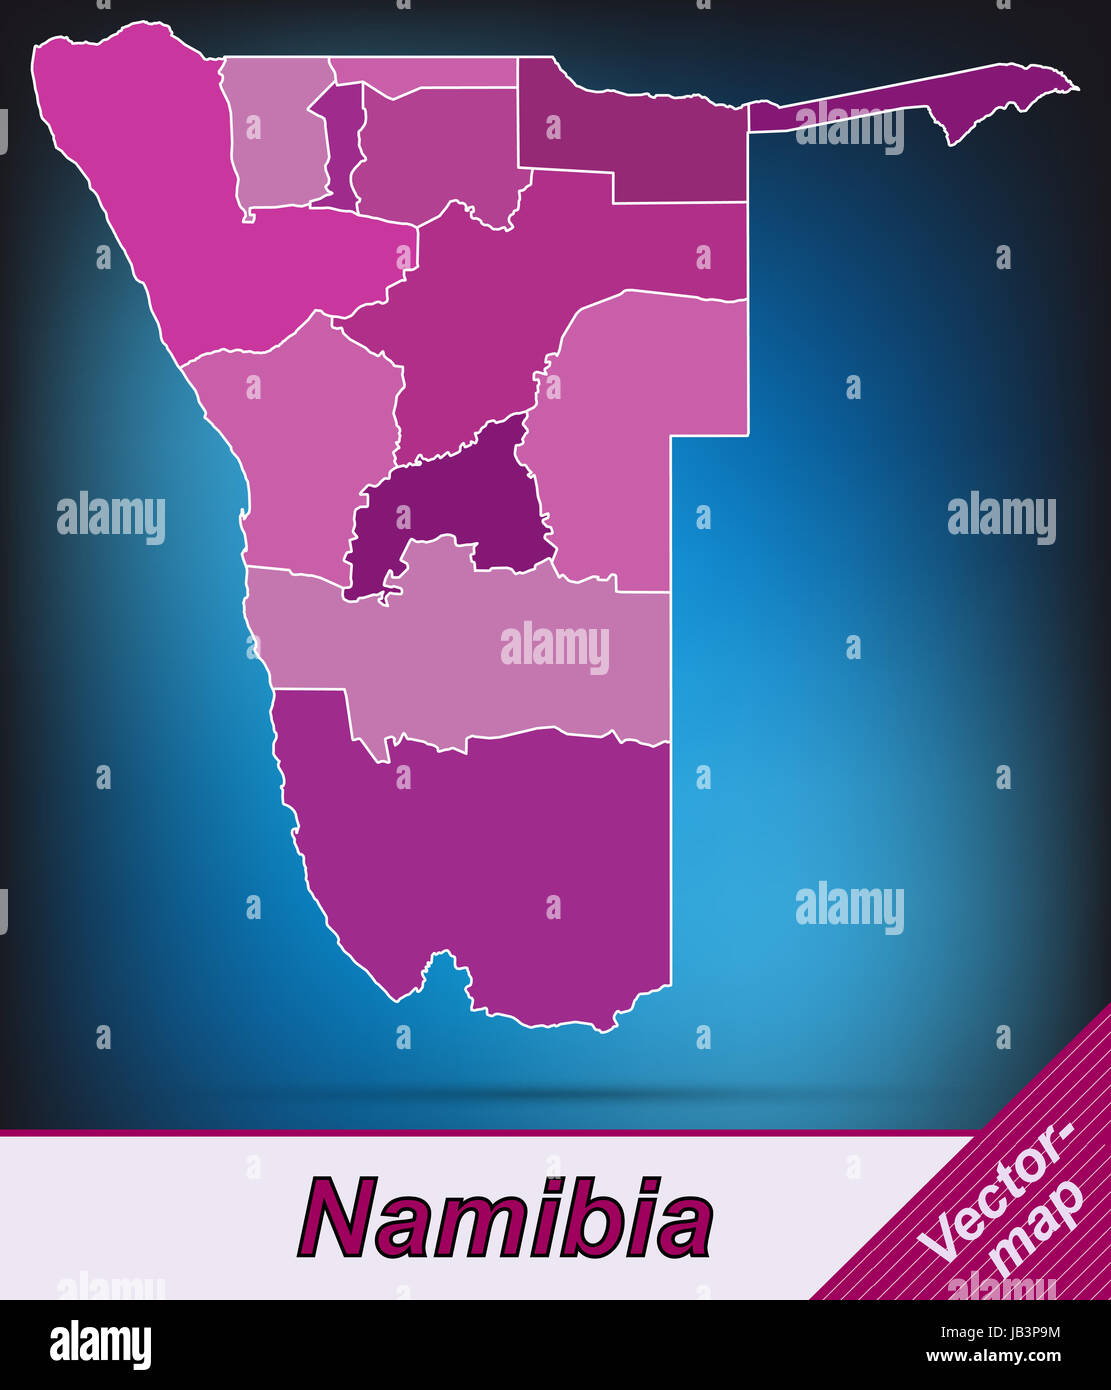 Namibia in  Afrika als Grenzkarte mit Grenzen in Violett. Durch die ansprechende Gestaltung fügt sich die Karte perfekt in Ihr Vorhaben ein. Stock Photo